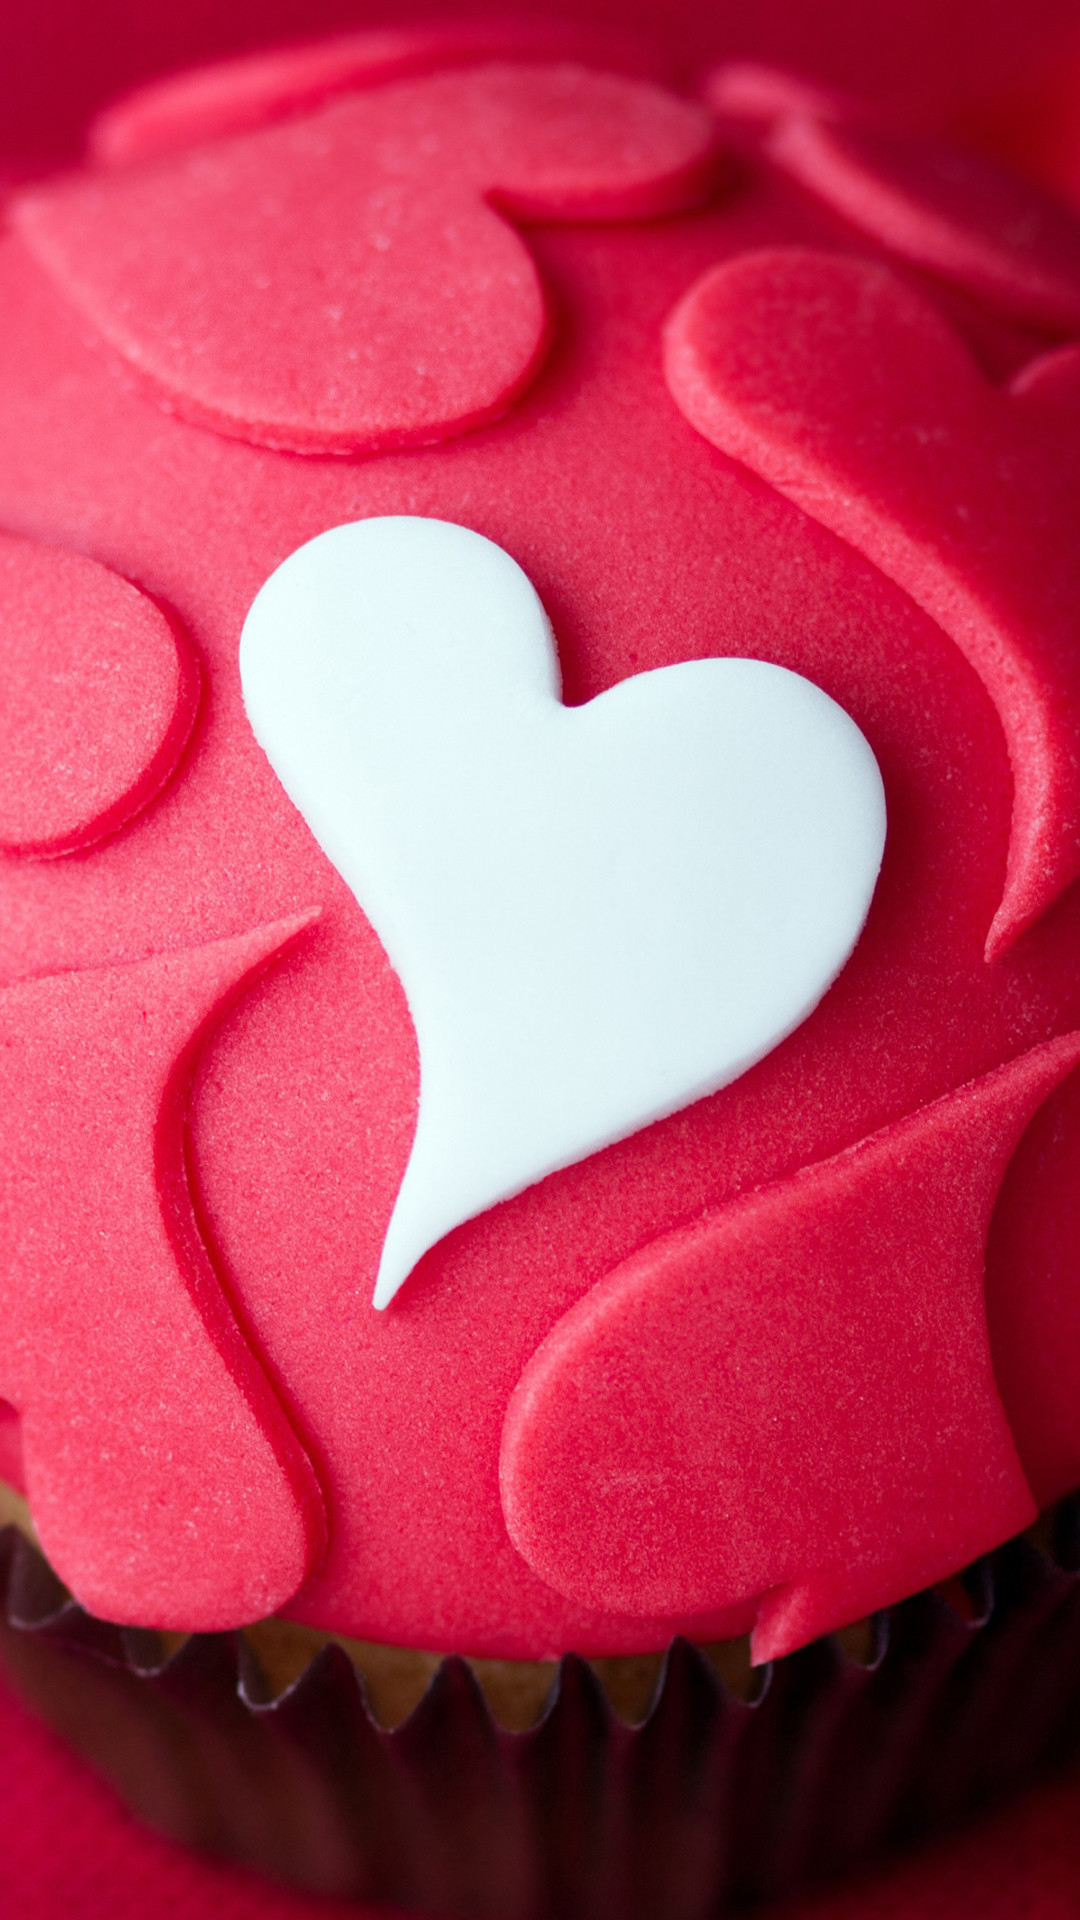 Heart Love Shaped Desert Cake #iPhone #plus #wallpaper